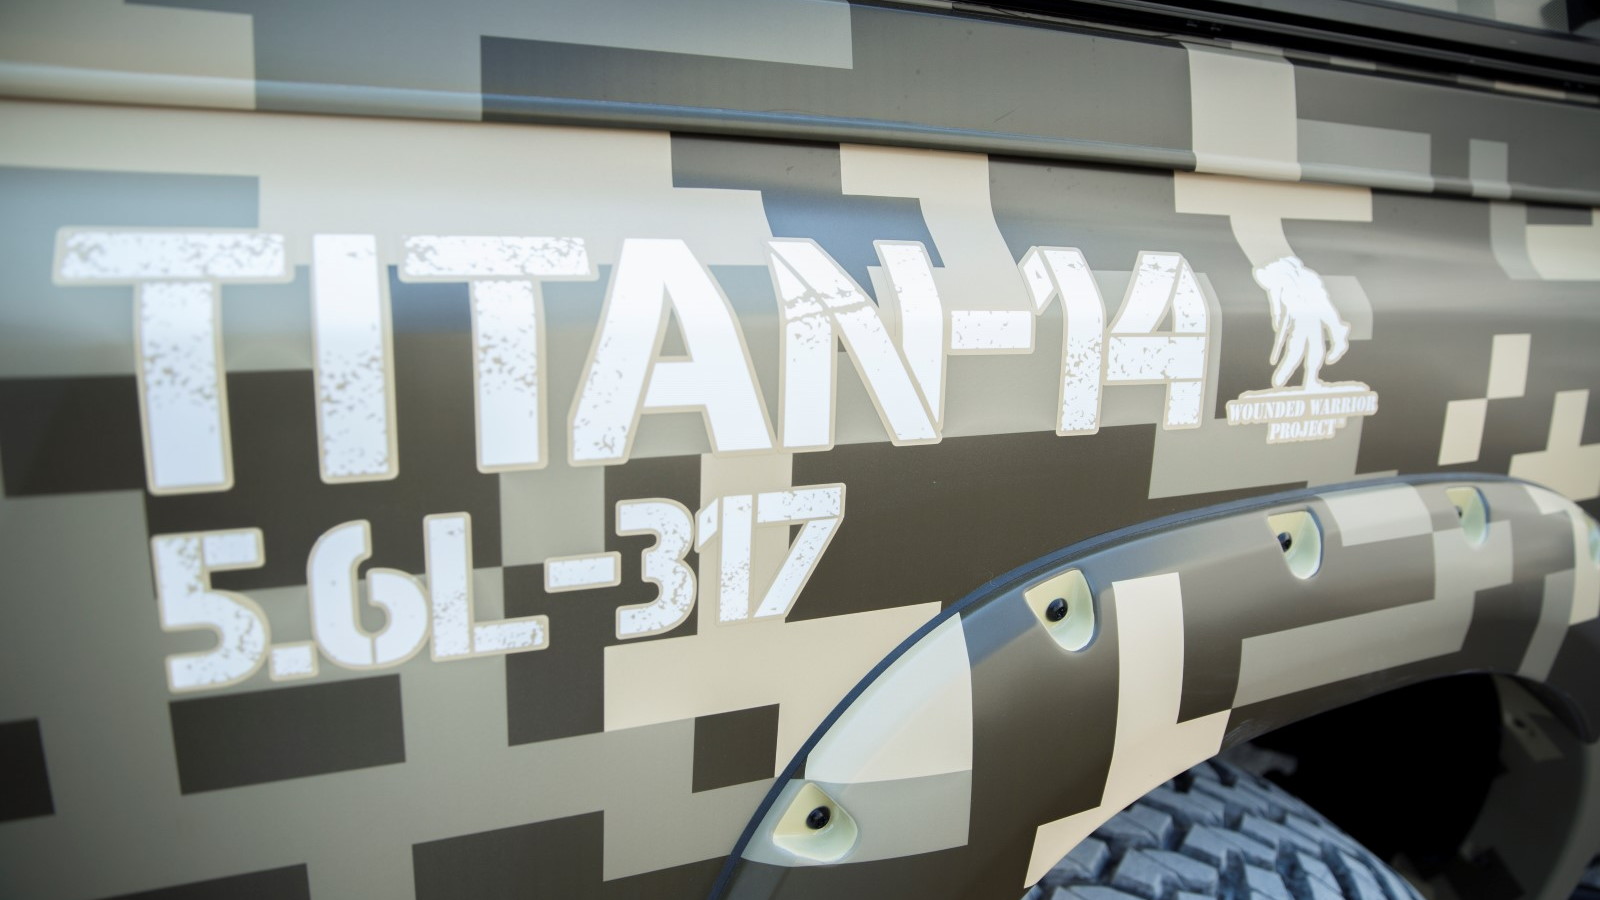 2014 Nissan Titan "Project Titan"